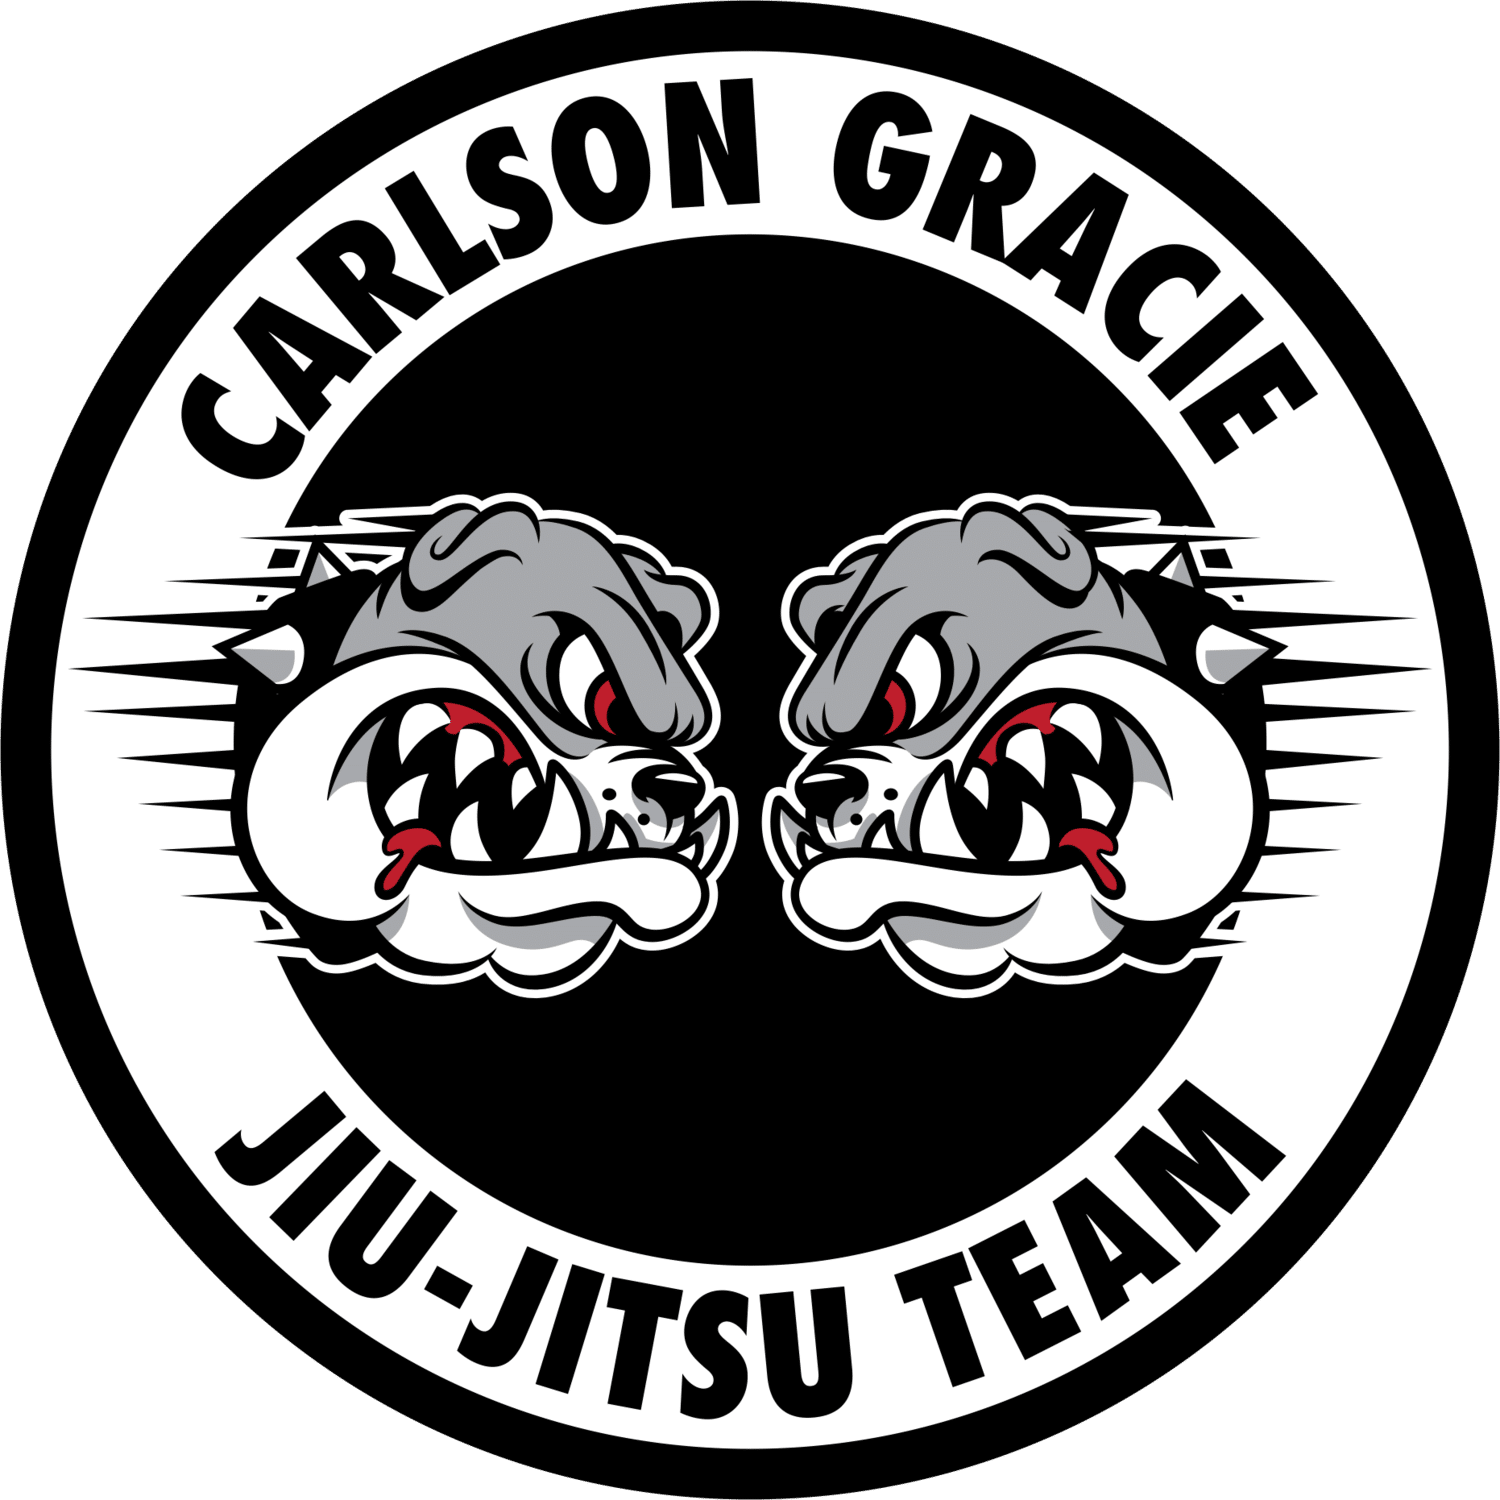 Carlson Gracie JJ Team logo